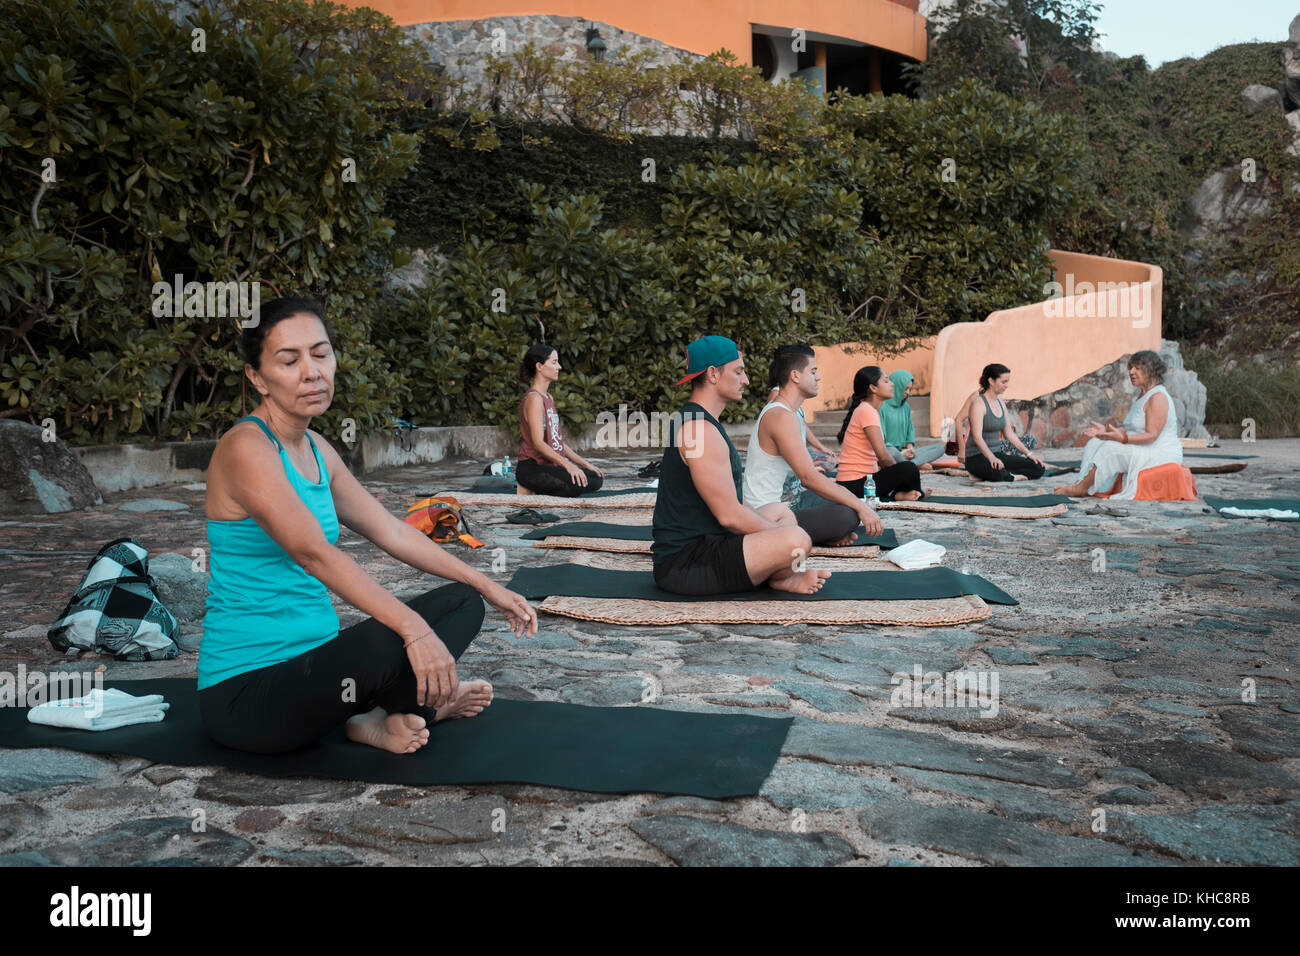 Yoga Retreat, grupo de gente sentada y meditando sobre esteras, Puerto Vallarta - mismaloya, México Foto de stock